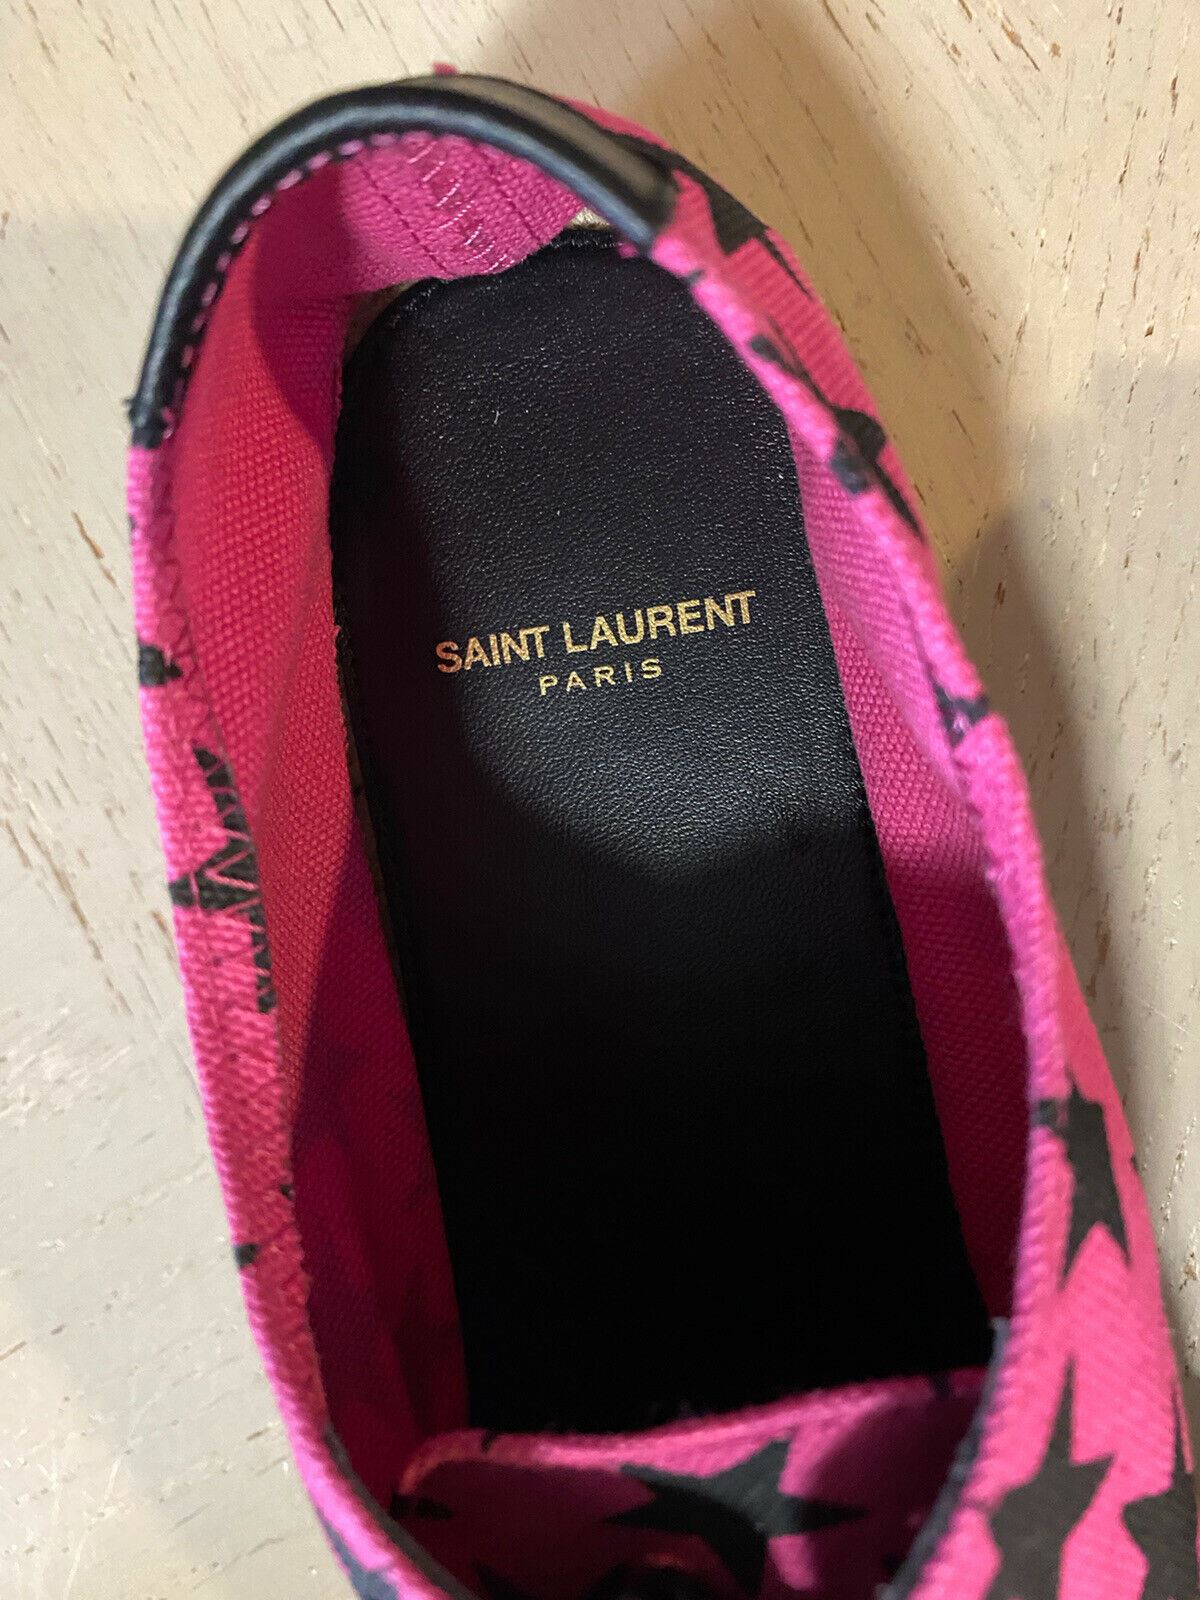 NIB Saint Laurent Damen-Espadrille-Schuhe mit Sternenmuster, Rot/Schwarz, 9,5 US/39,5 Eu